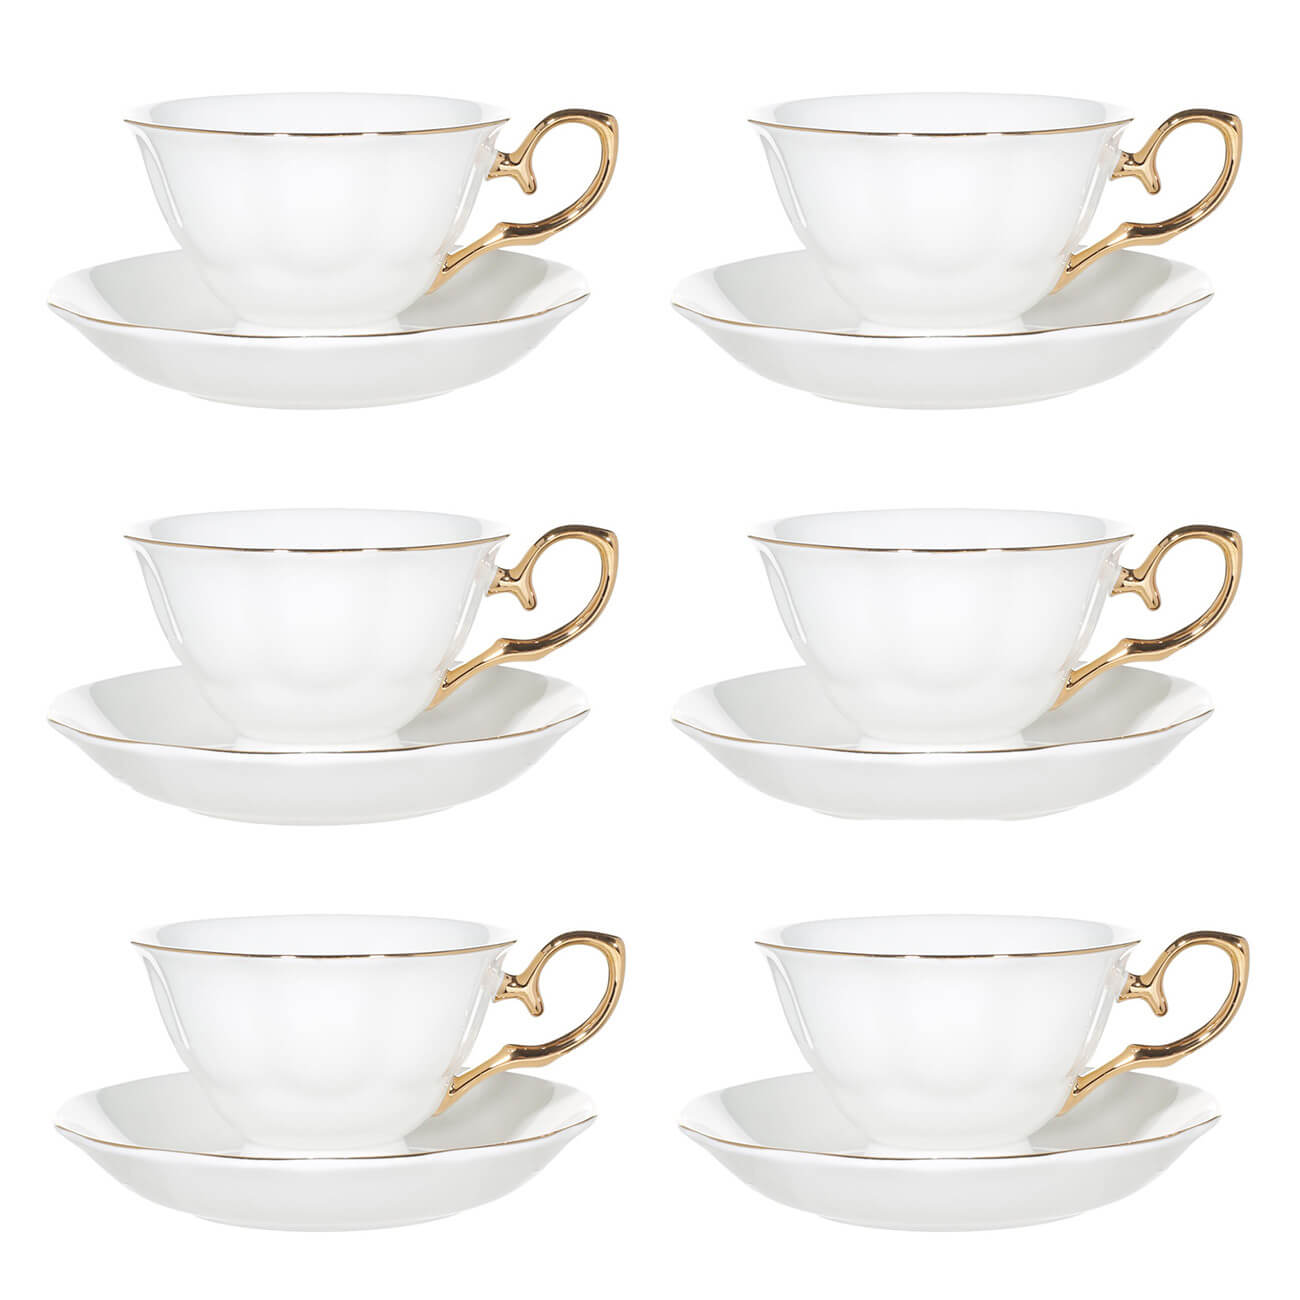 Пара чайная, 6 перс, 12 пр, 180 мл, фарфор F, бело-золотистая, Premium Gold ложка именная чайная с гравировкой